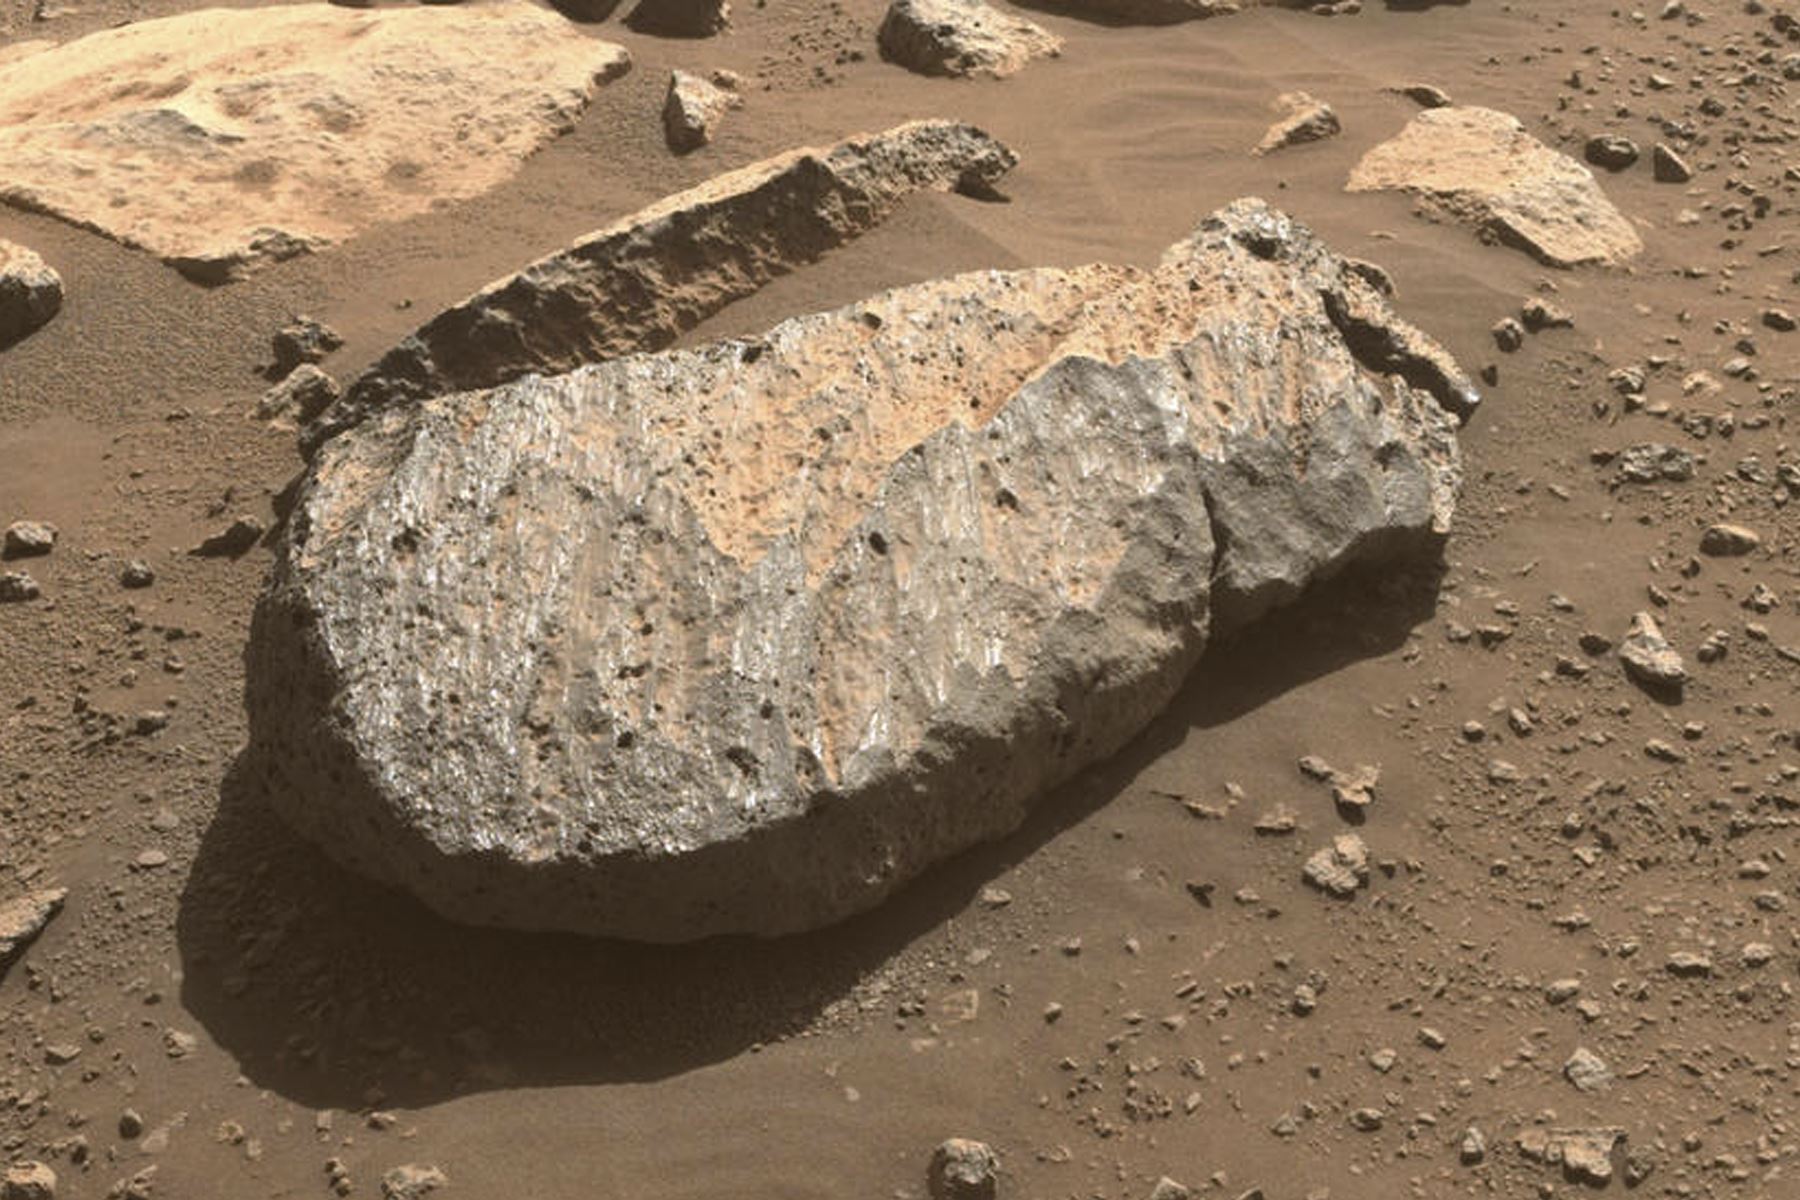 Primer plano de la roca, apodada “Rochette”, que el equipo científico de Perseverance examinará para determinar si tomar de ella una muestra del núcleo de la roca. Foto: NASA/JPL-Caltech.